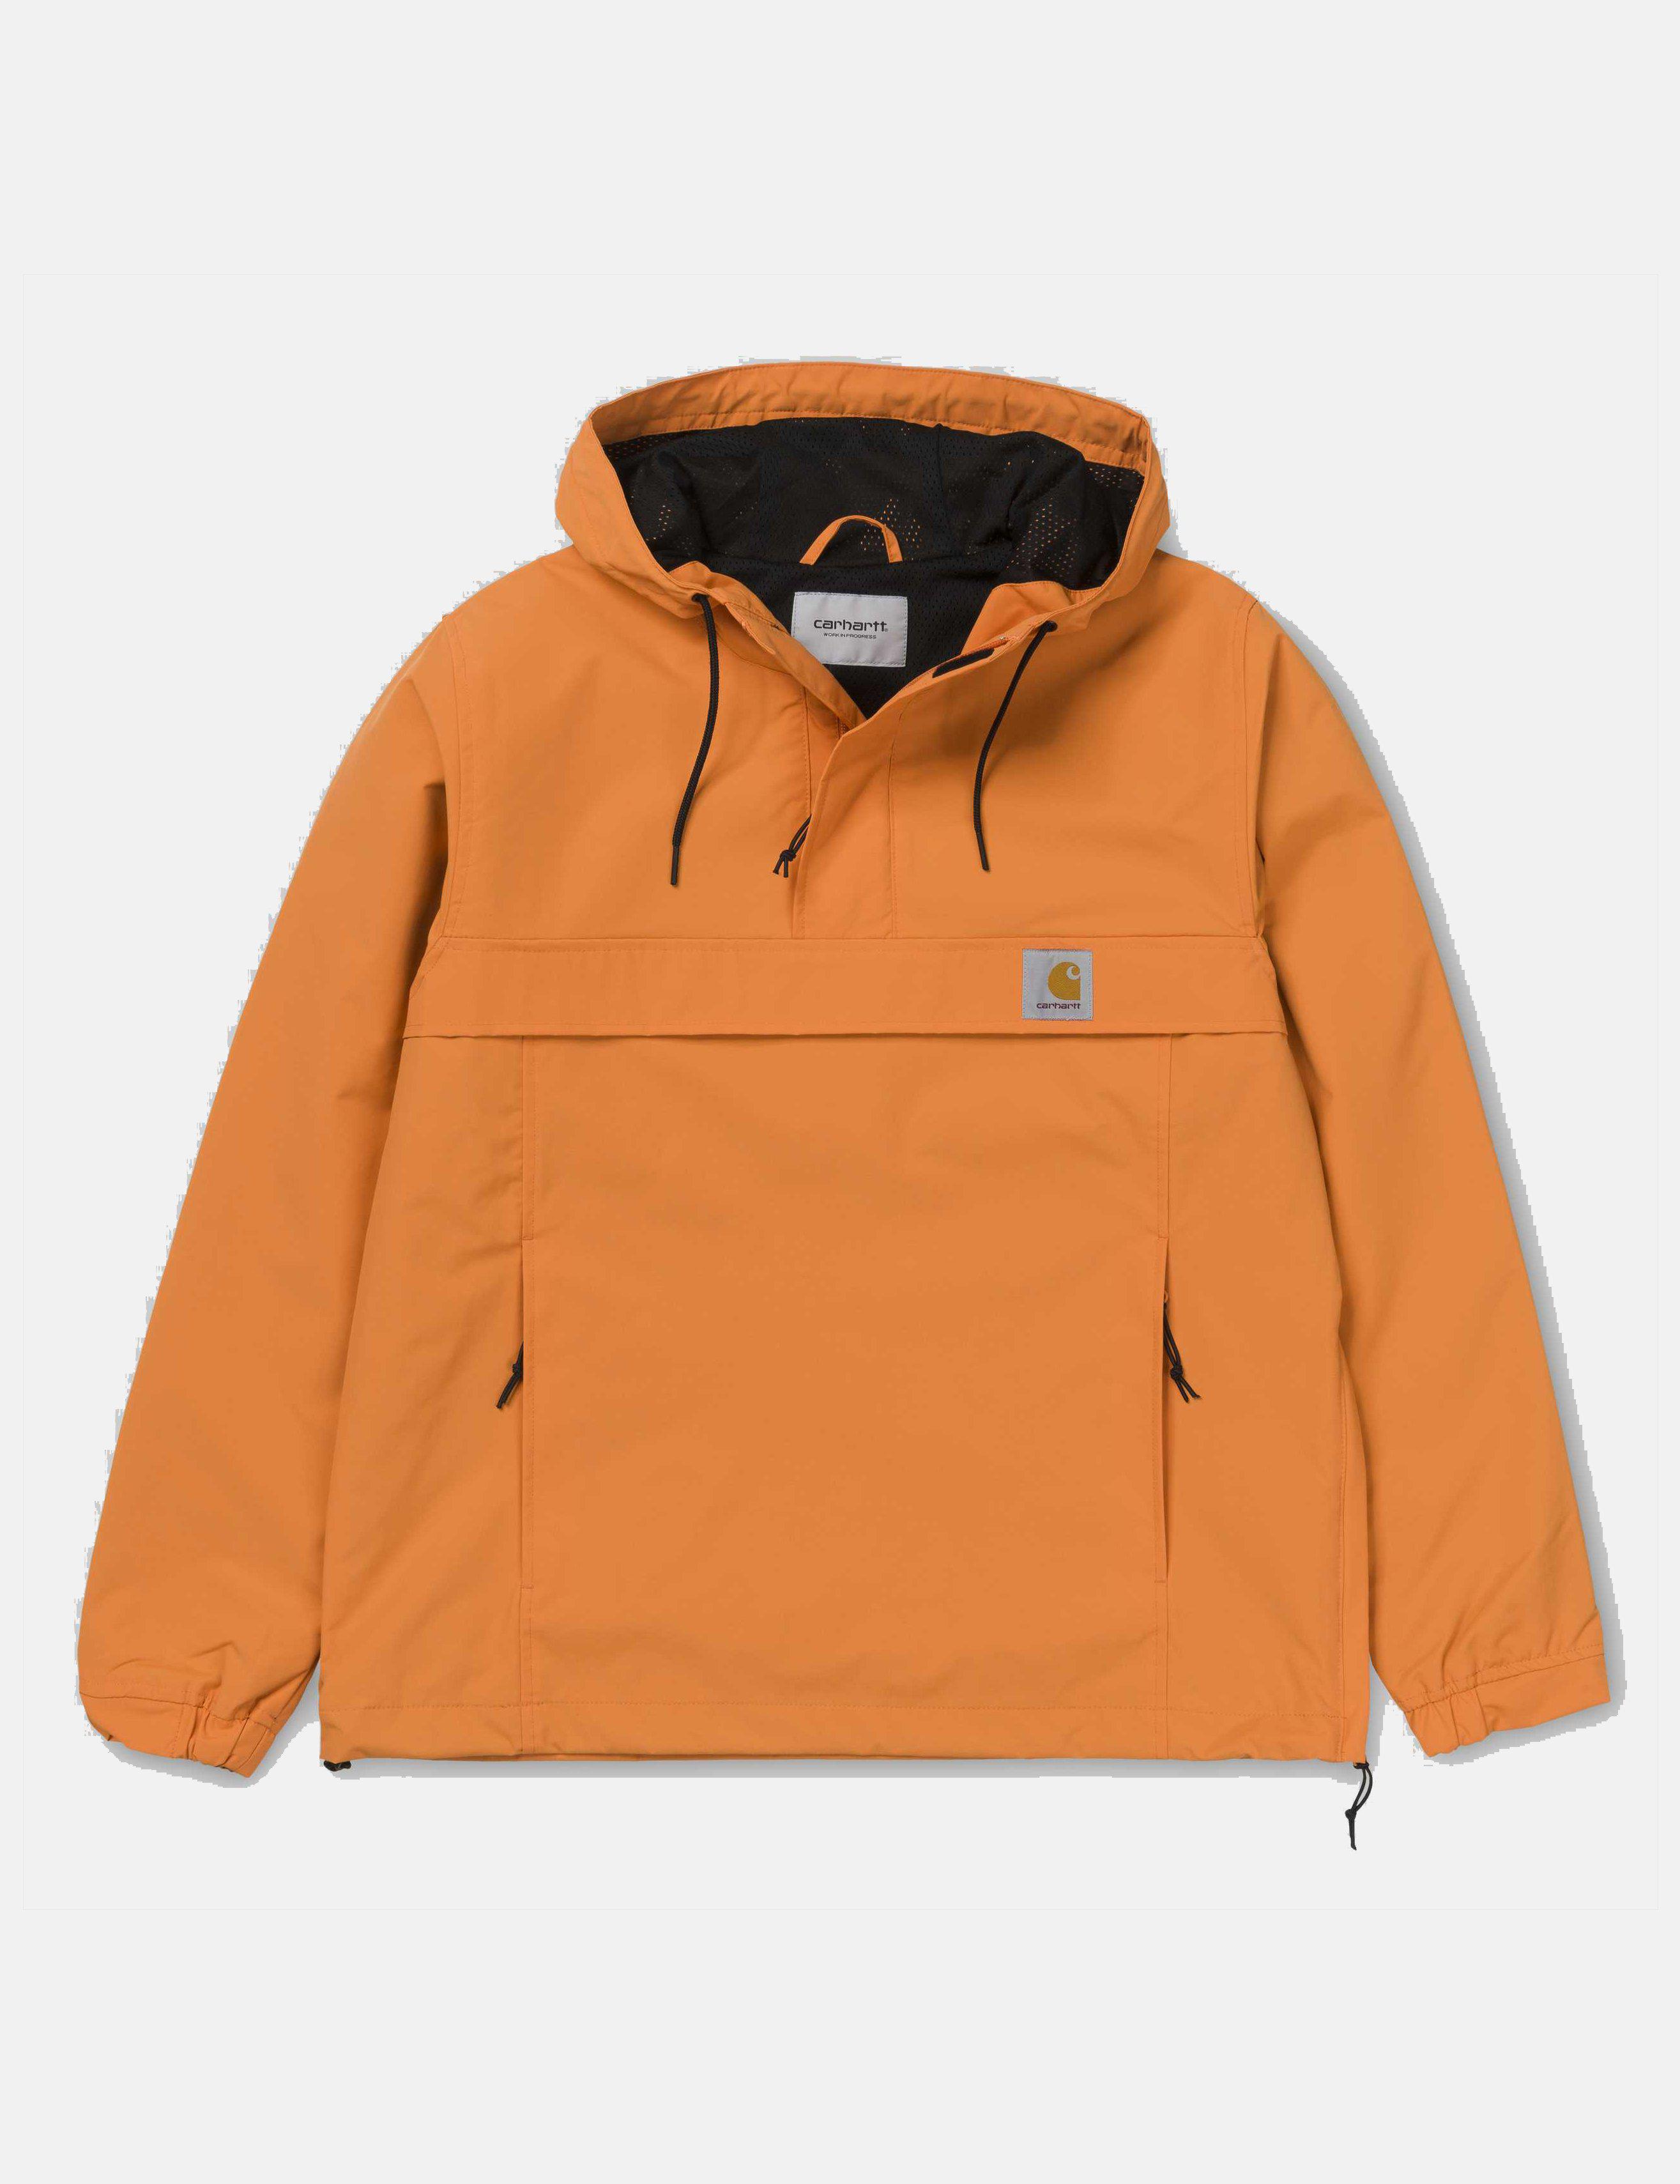 Lyst - Carhartt Nimbus Half-zip Jacket (un-lined) in Orange for Men